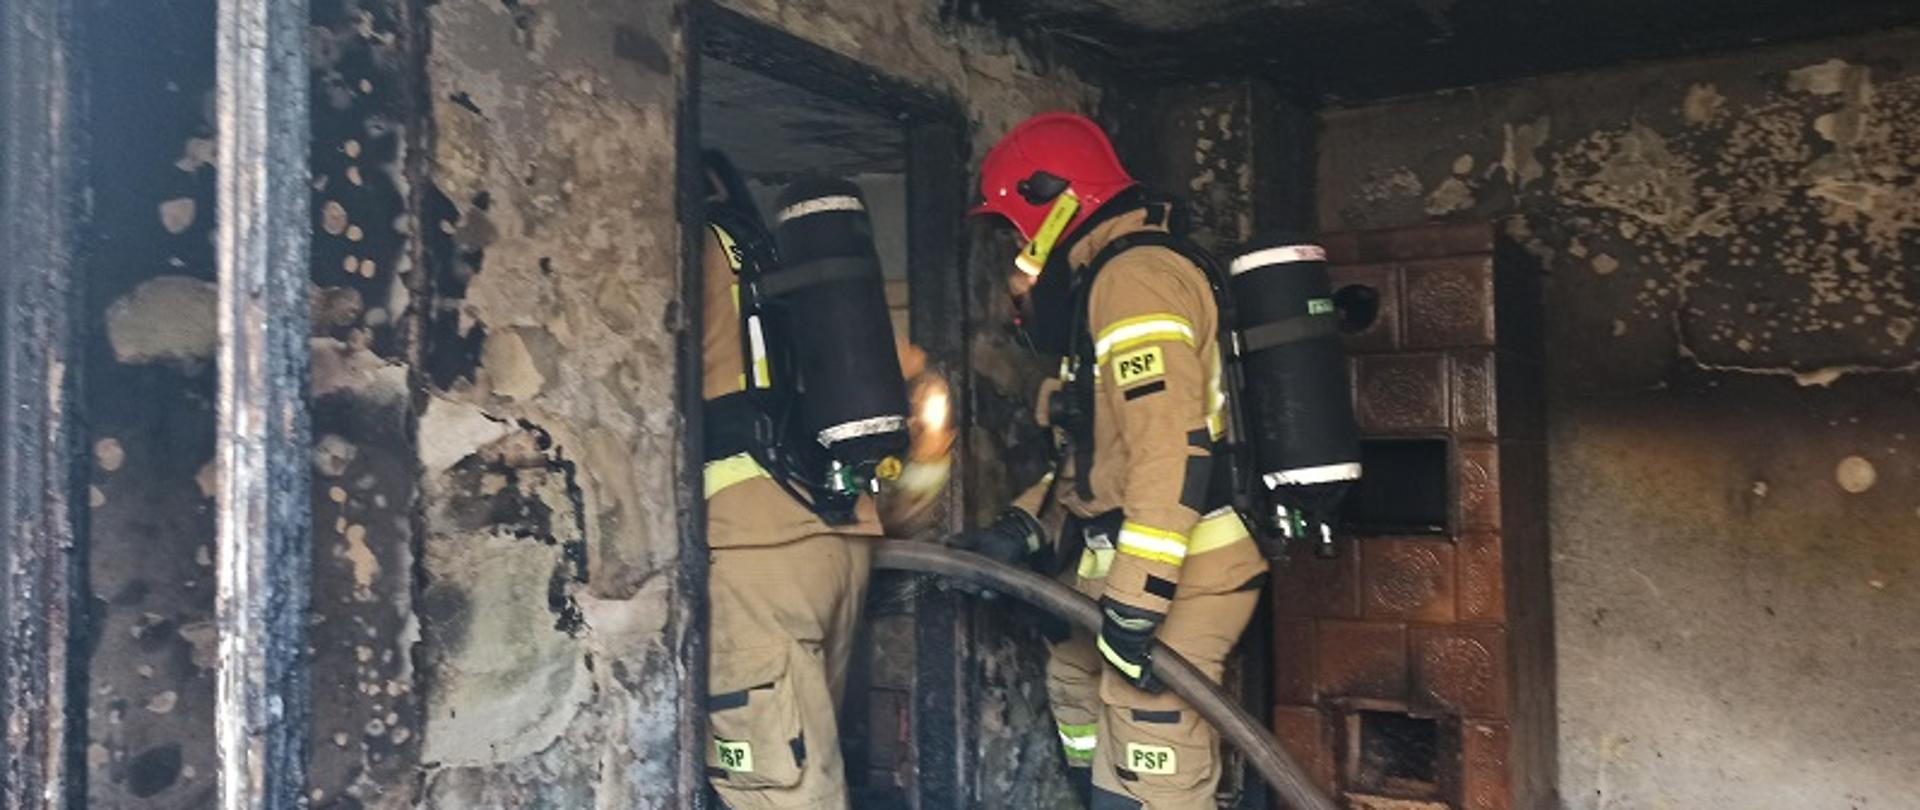 Zdjęcie przedstawia spalone wnętrze pomieszczenia i rotę strażaków z wężem gaśniczym w ubraniach specjalnych stojących we wnęce drzwiowej. Ściany z ubytkami tynku, czarne od ognia